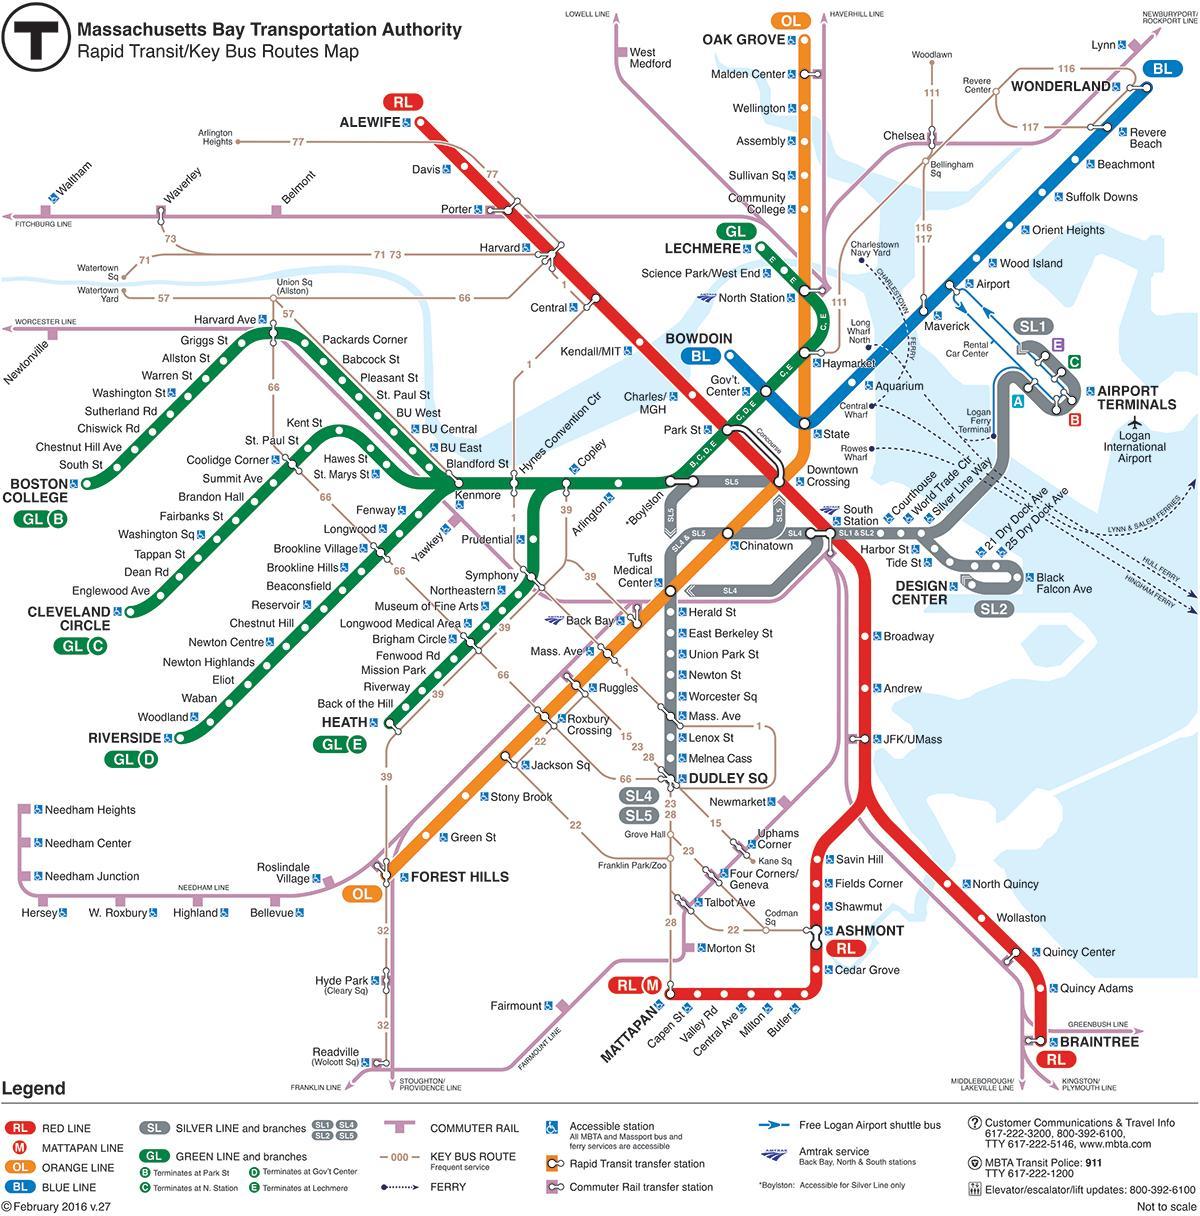 MBTA mapa liña vermella